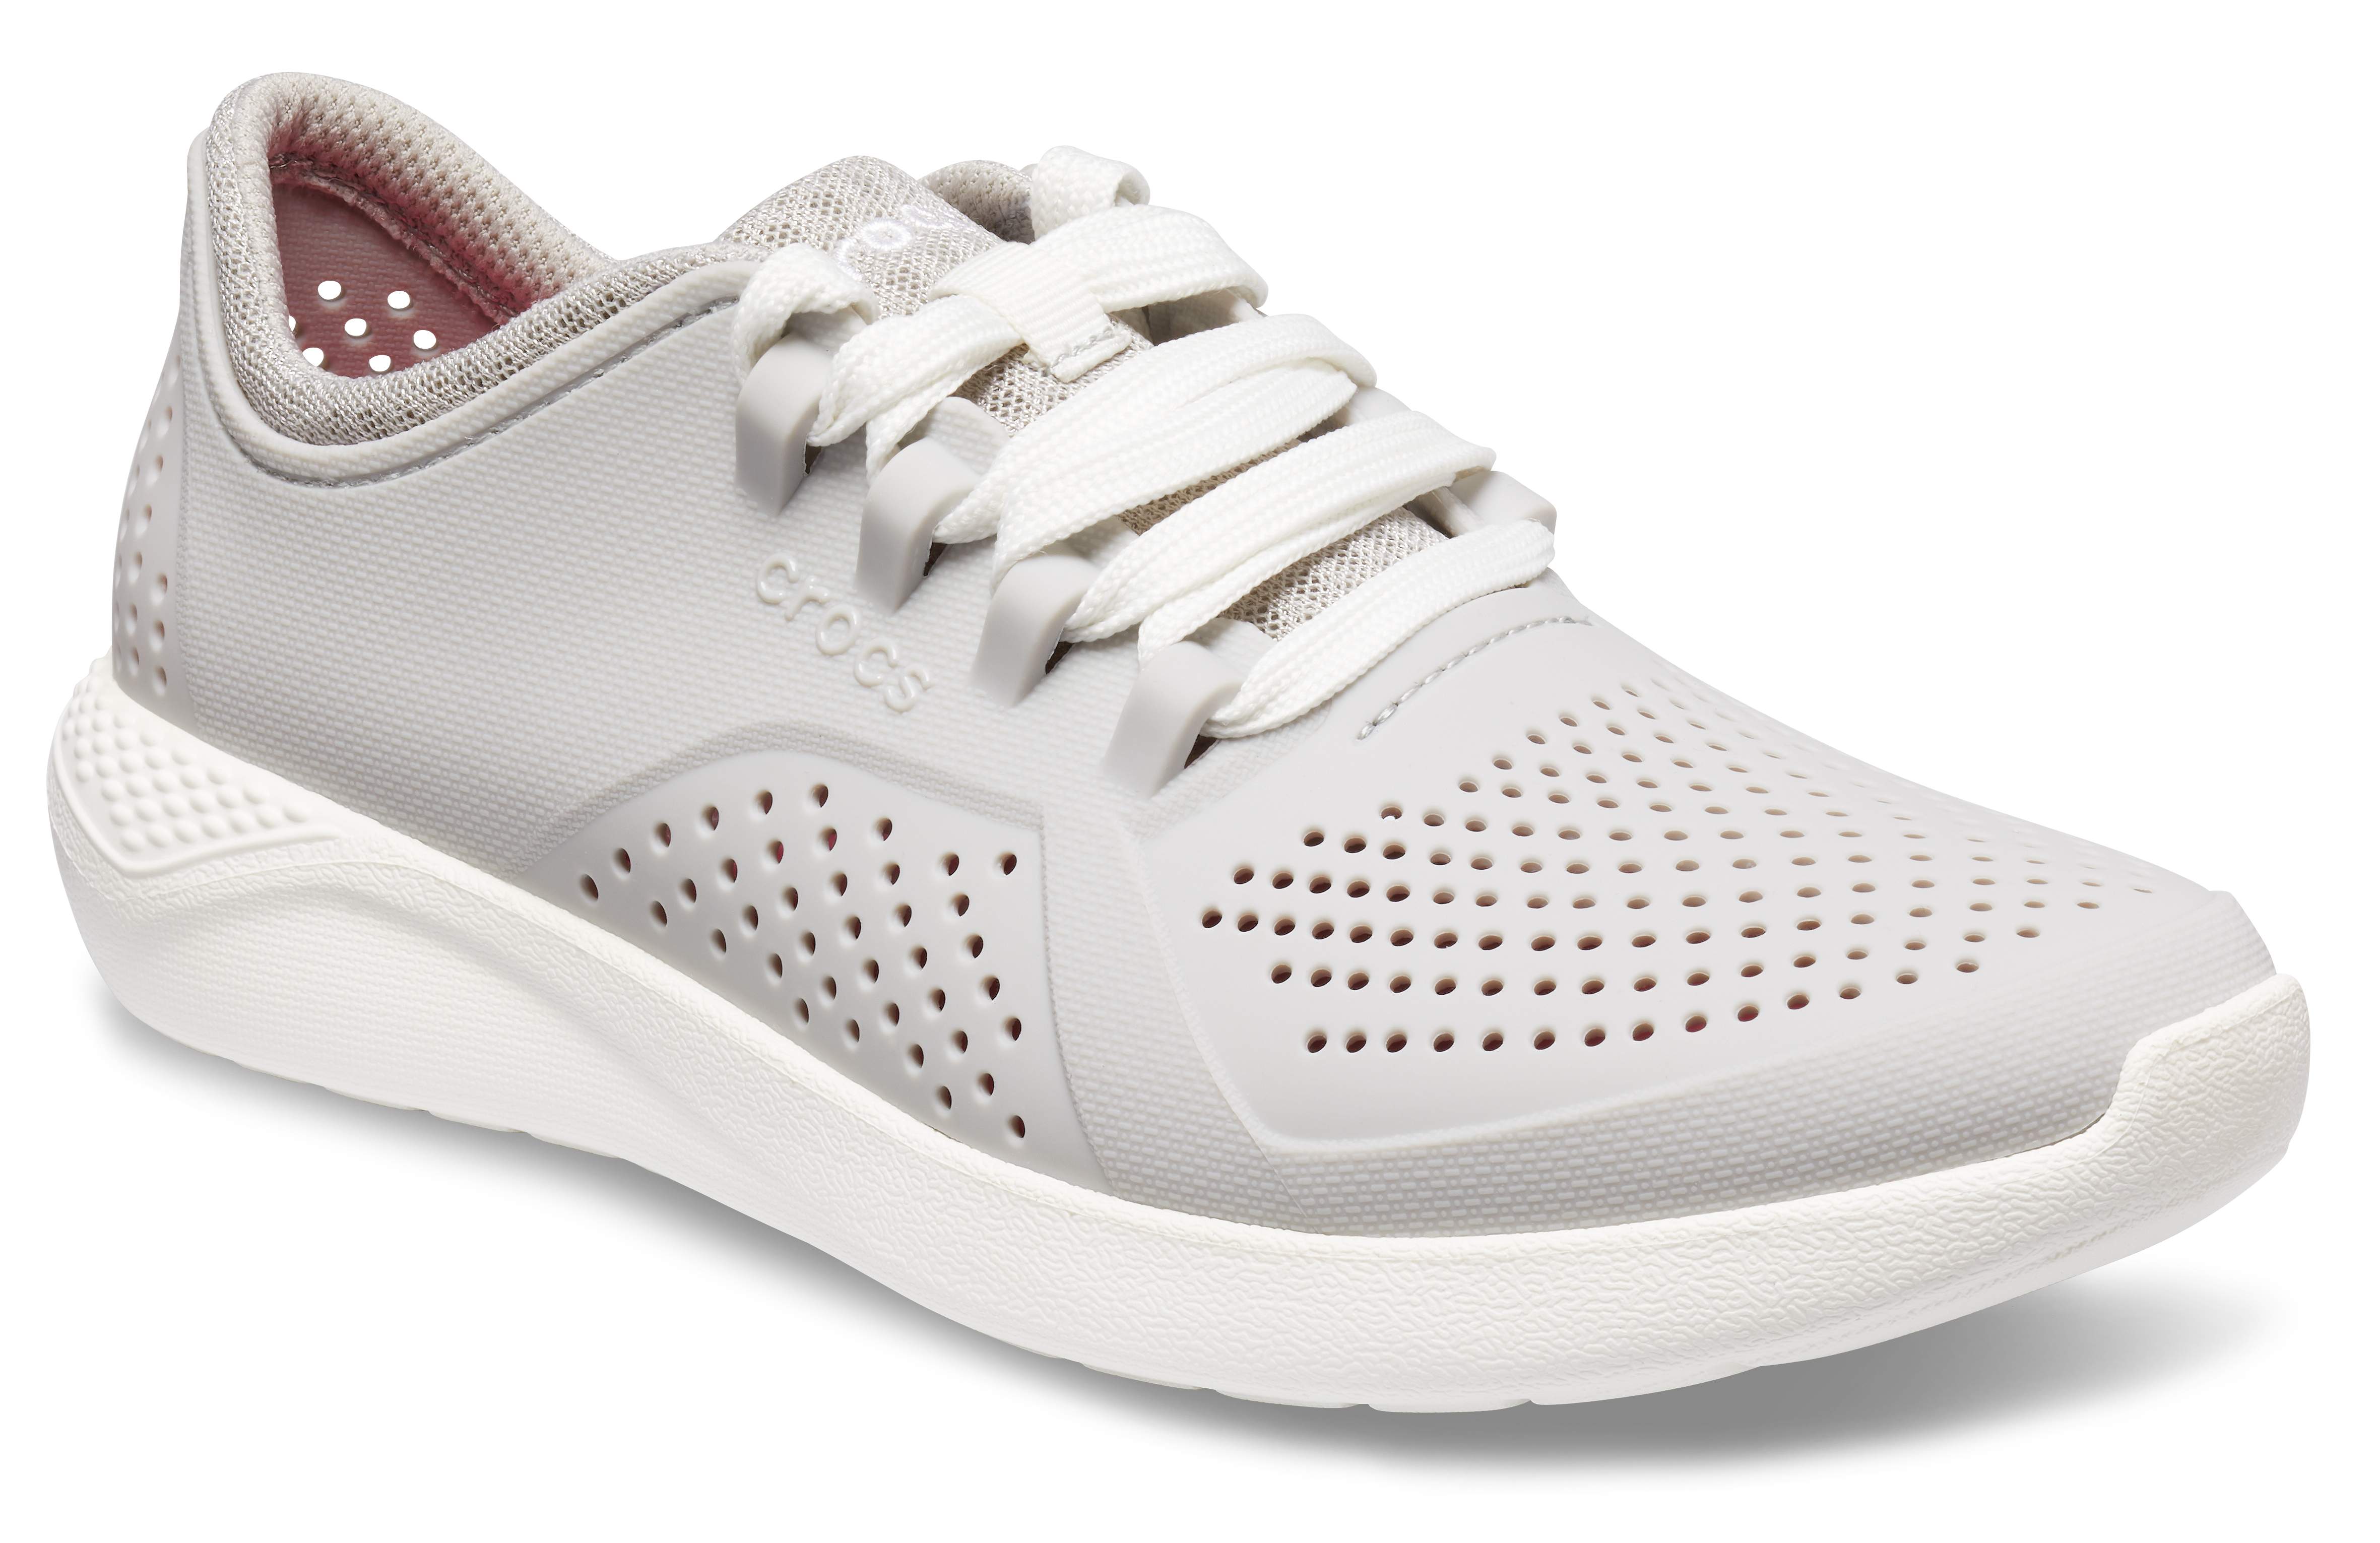 croc tennis shoes women